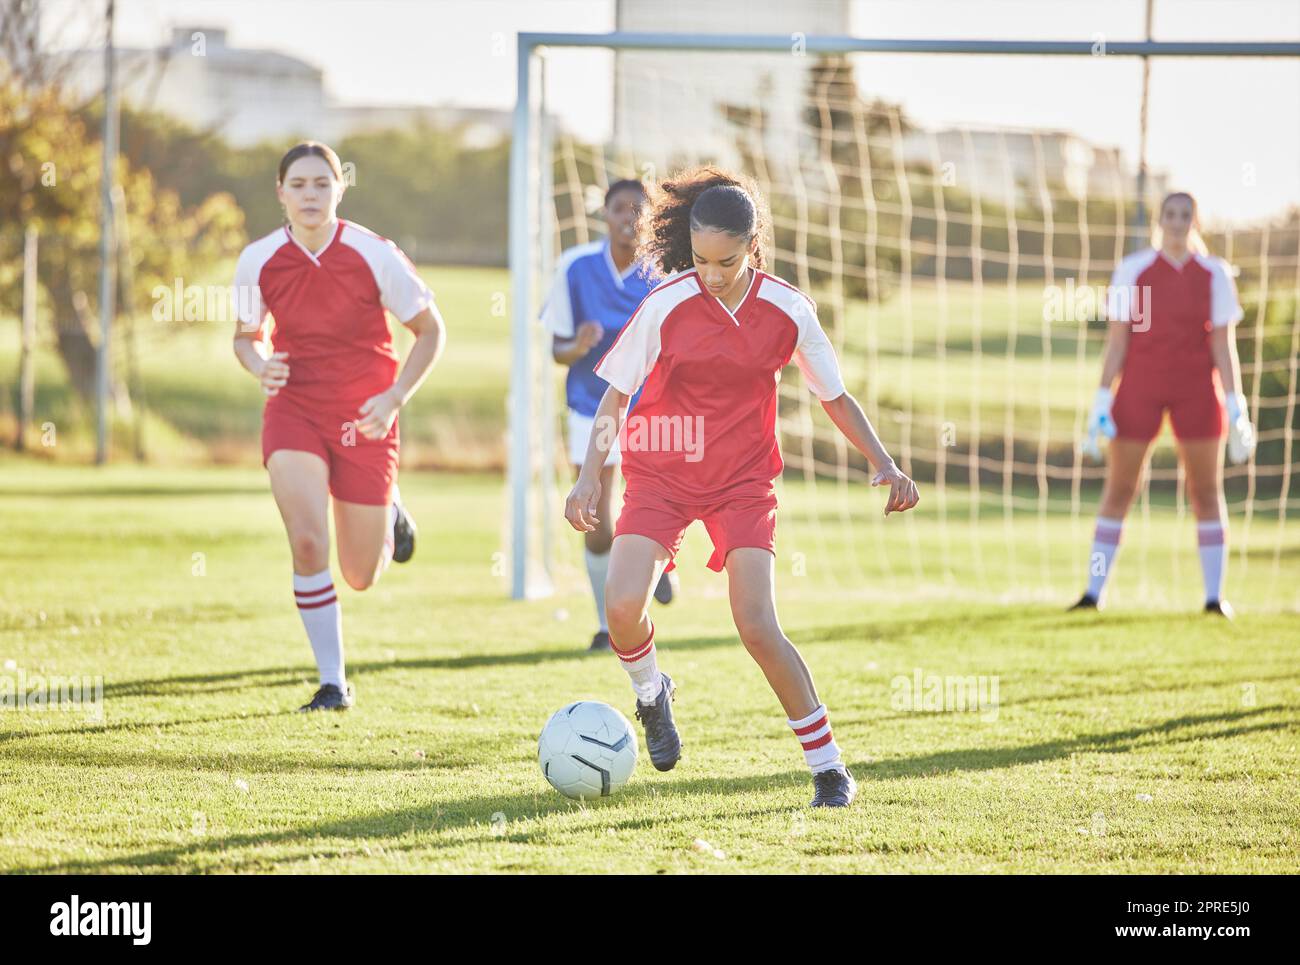 Fußball-, Sport- und Mädchenteam spielen auf dem Spielfeld, während sie mit einem Ball treten, angreifen und laufen. Energie, schnelle und kompetente Fußballspieler in einem Wettkampf gegen Gegner im Freien Stockfoto